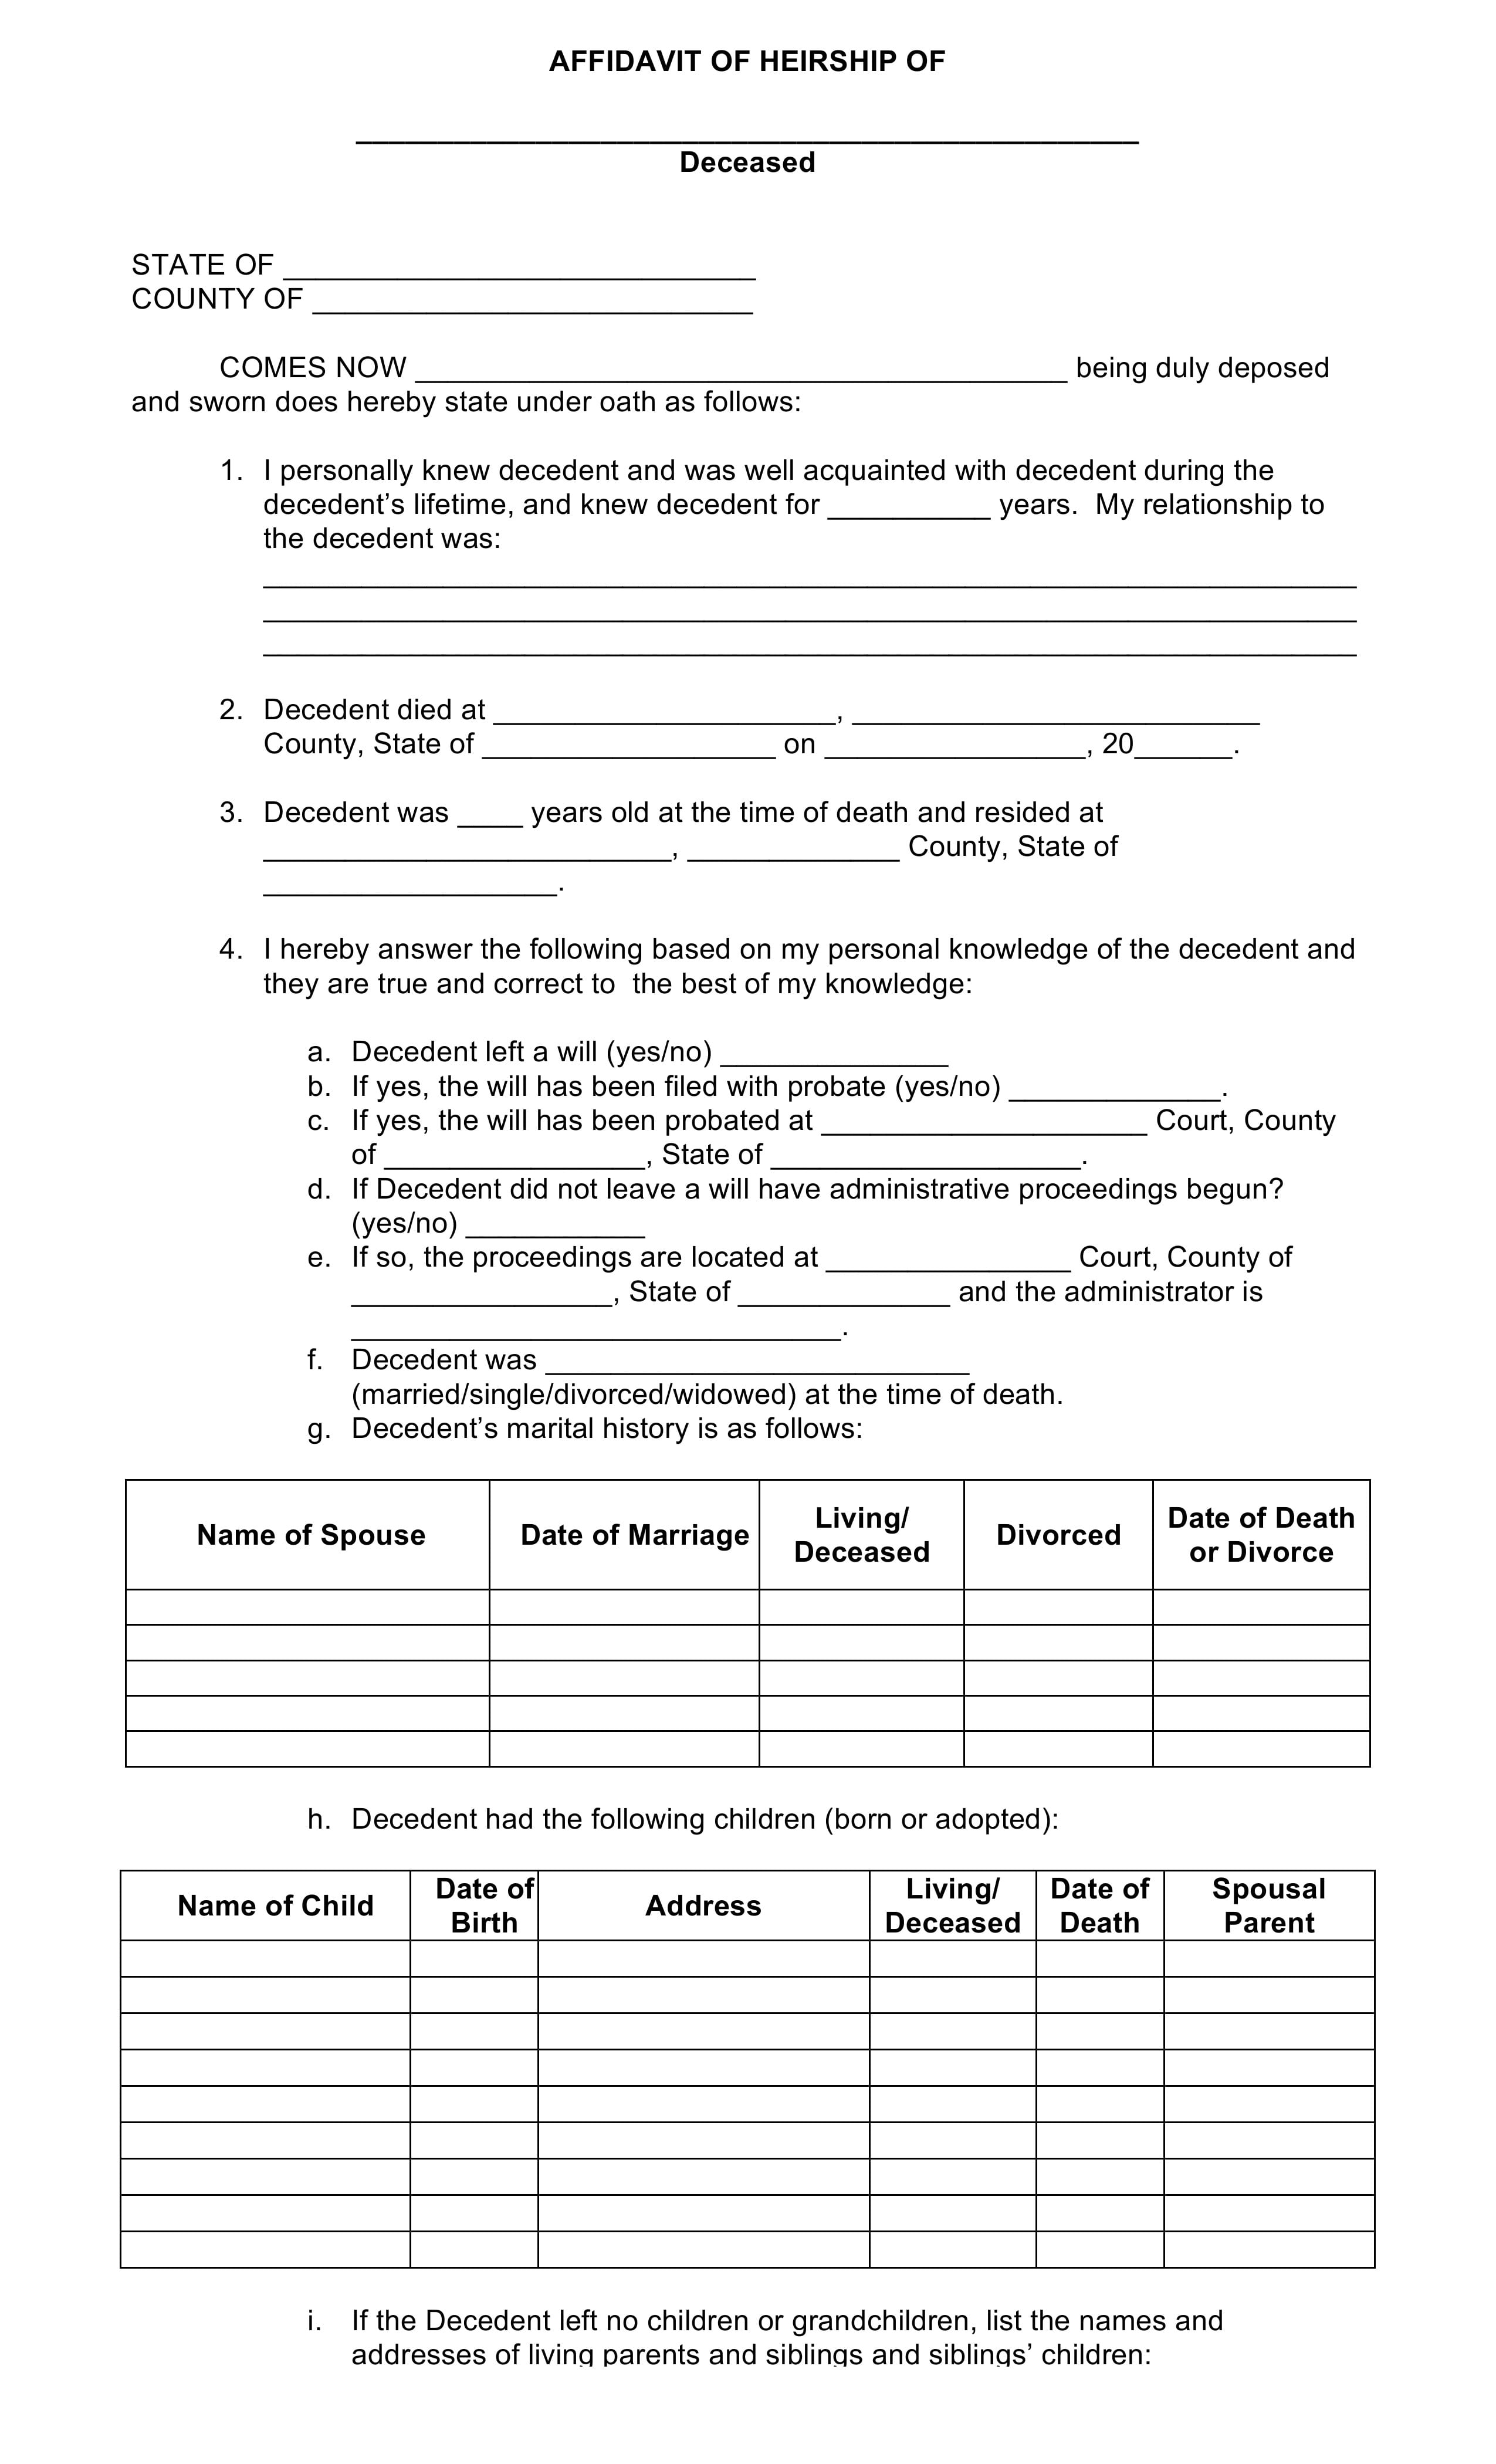 Download Free Blank Affidavit Of Heirship Form Form Download